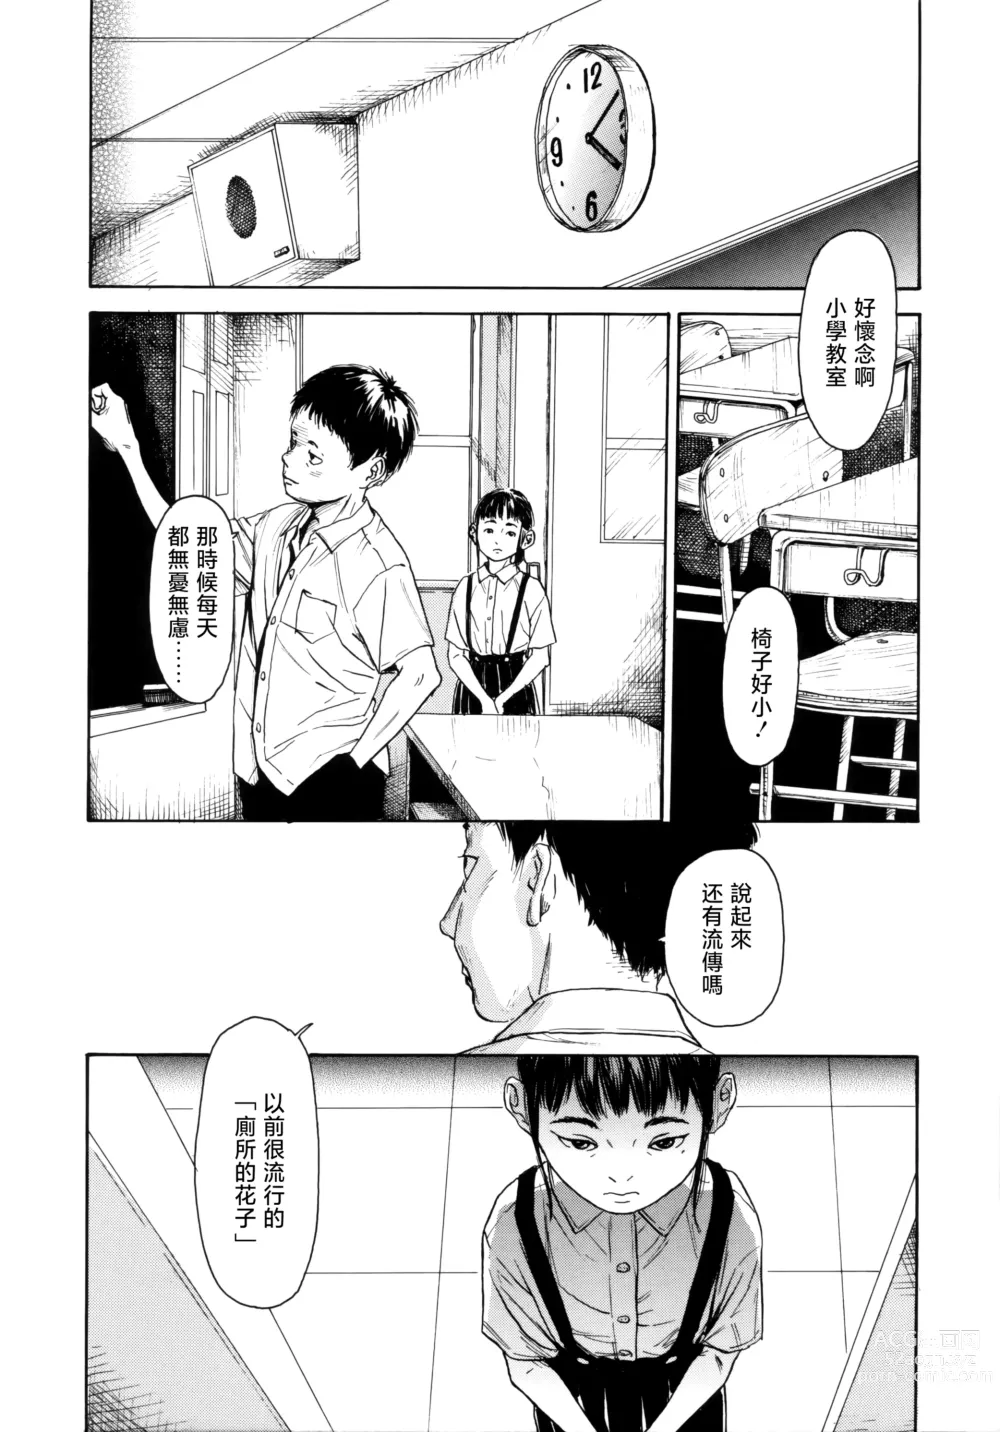 Page 6 of manga Hanako to Tarou no Natsuyasumi